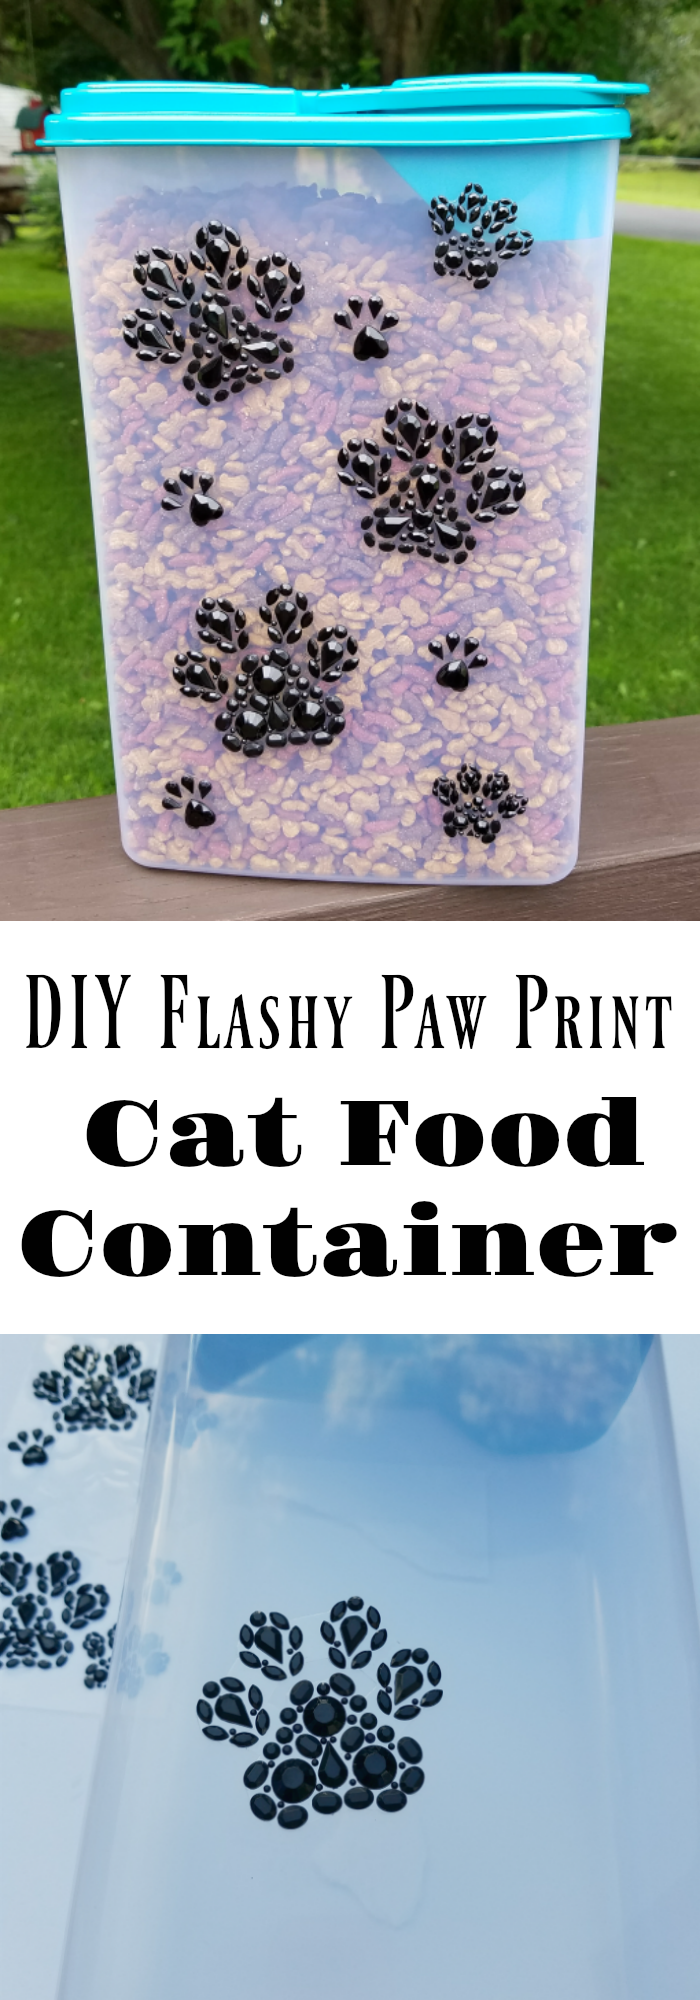 DIY Cat Food Container